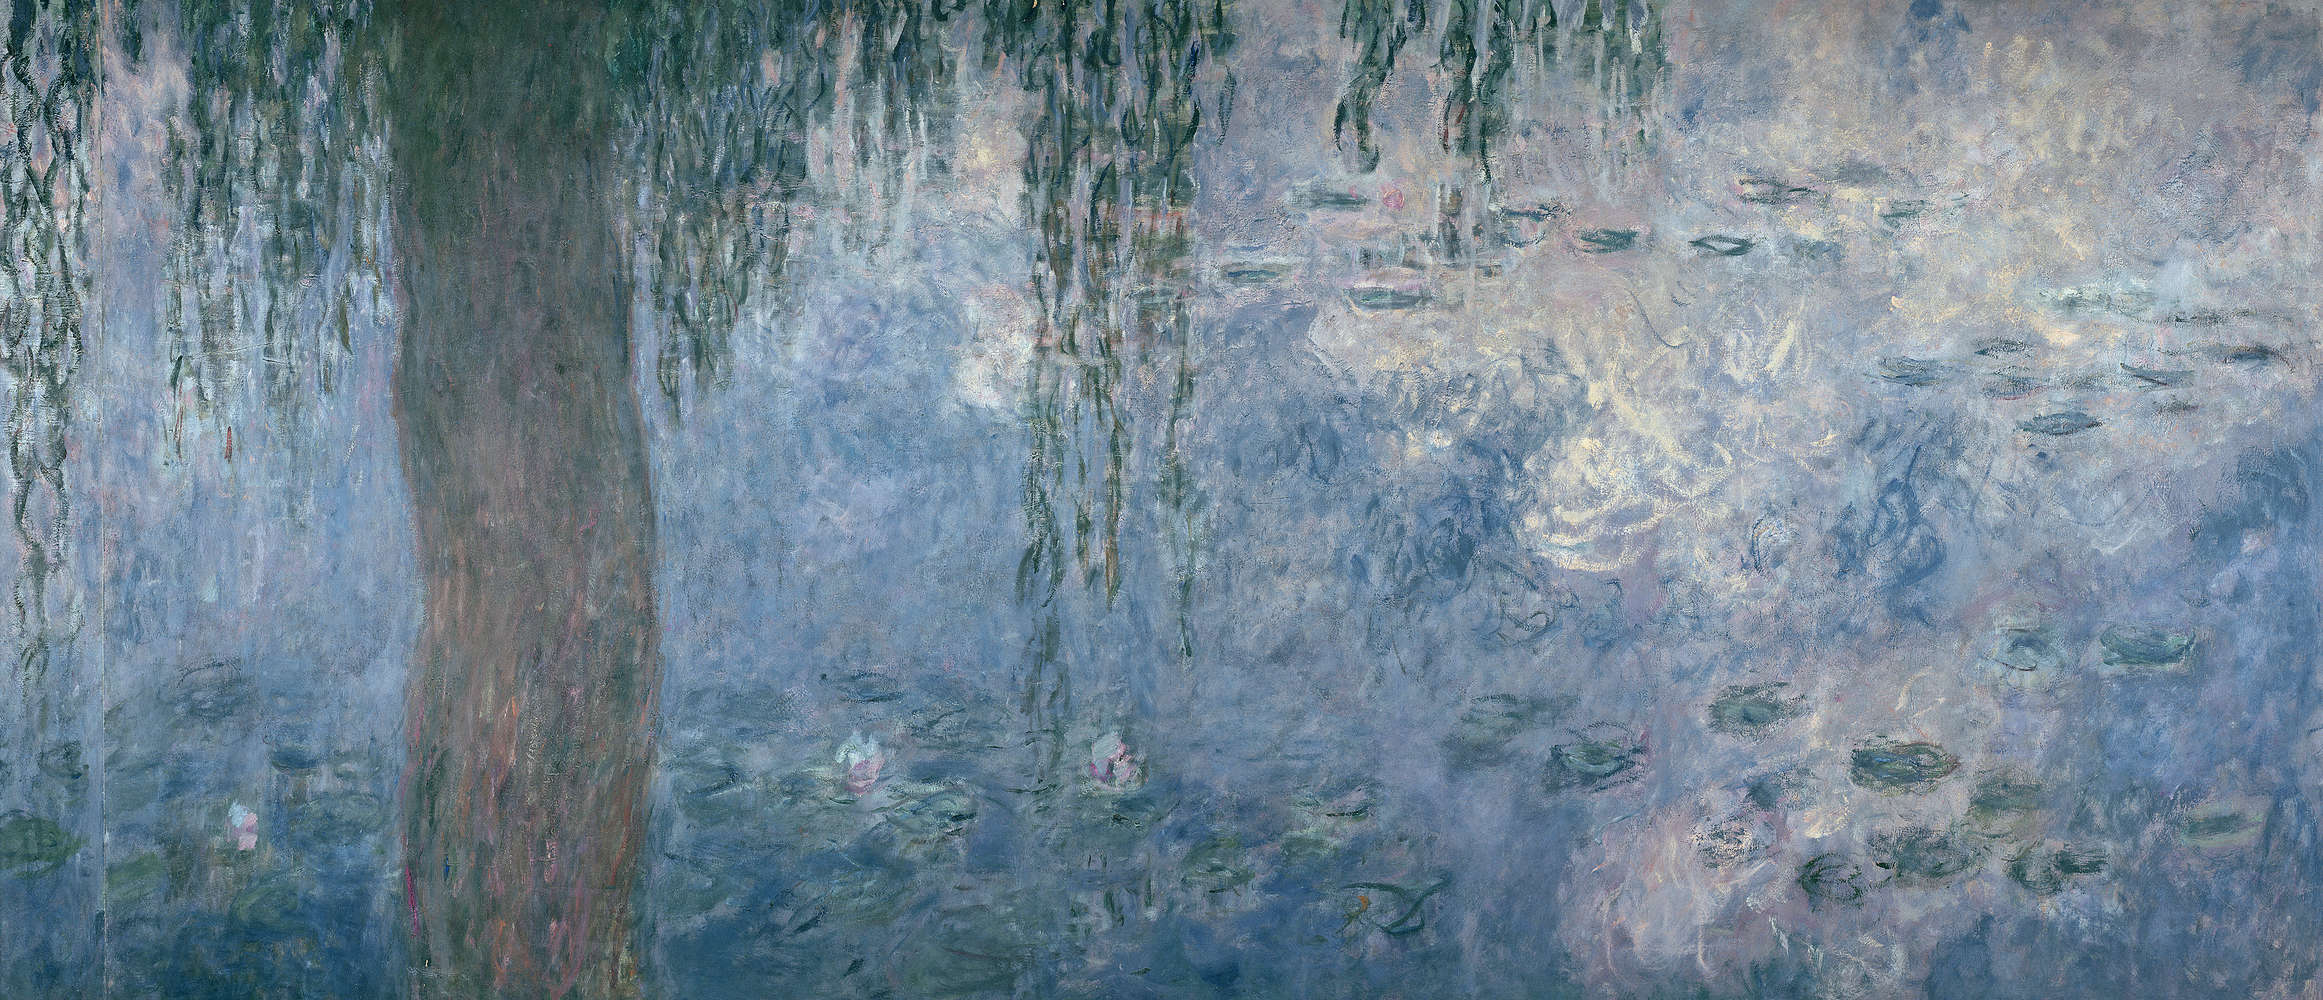             Papier peint "Nymphéas : matin avec saules pleureurs" de Claude Monet
        